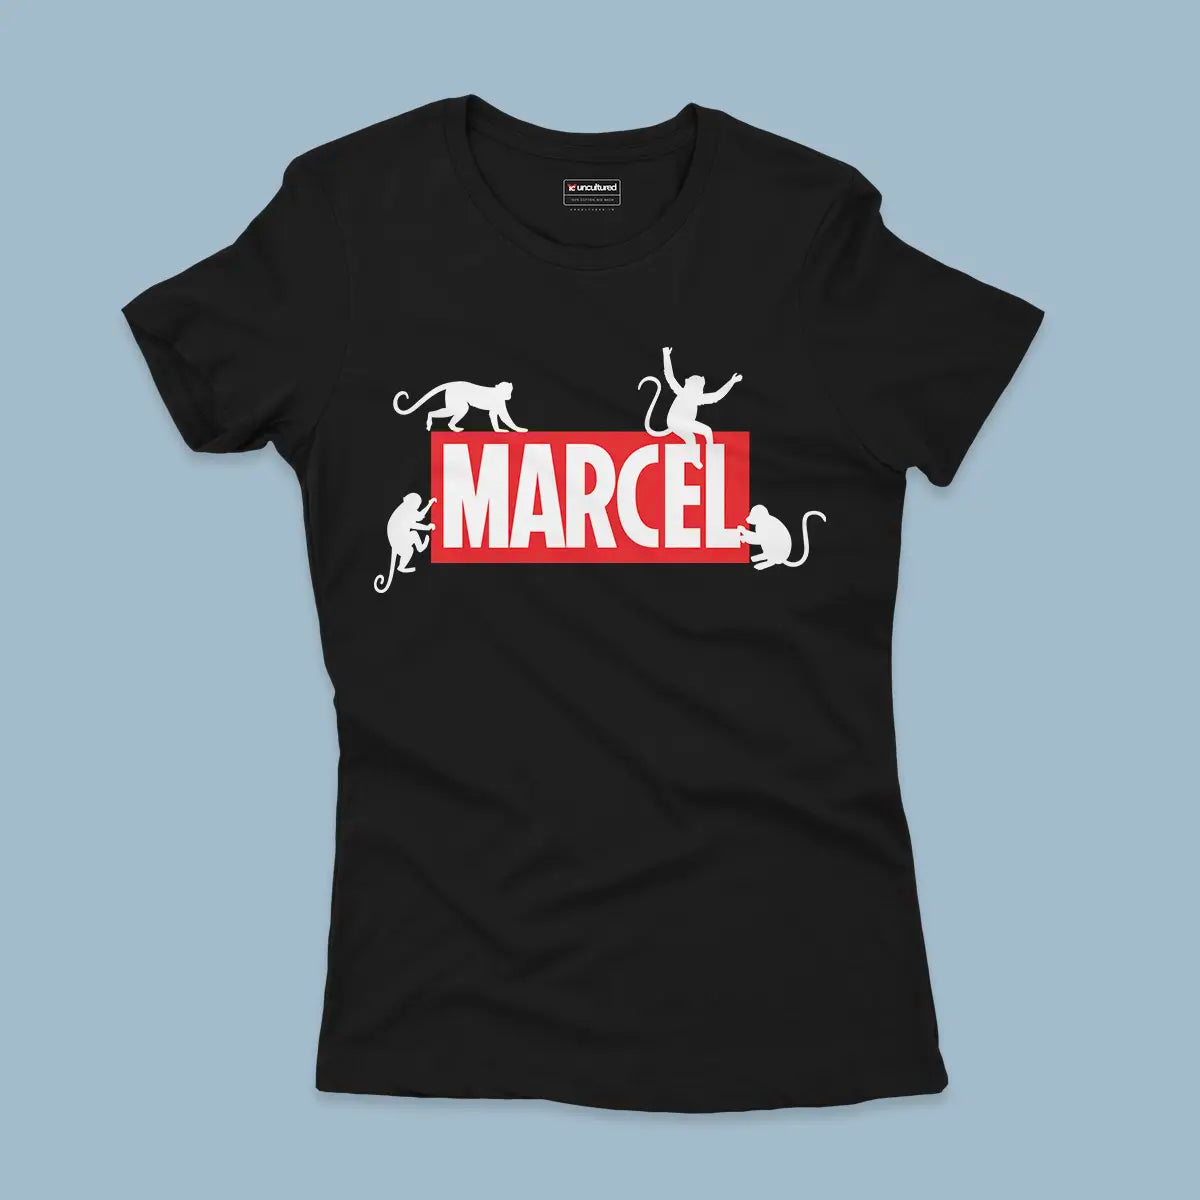 Marcel - Regular - Women